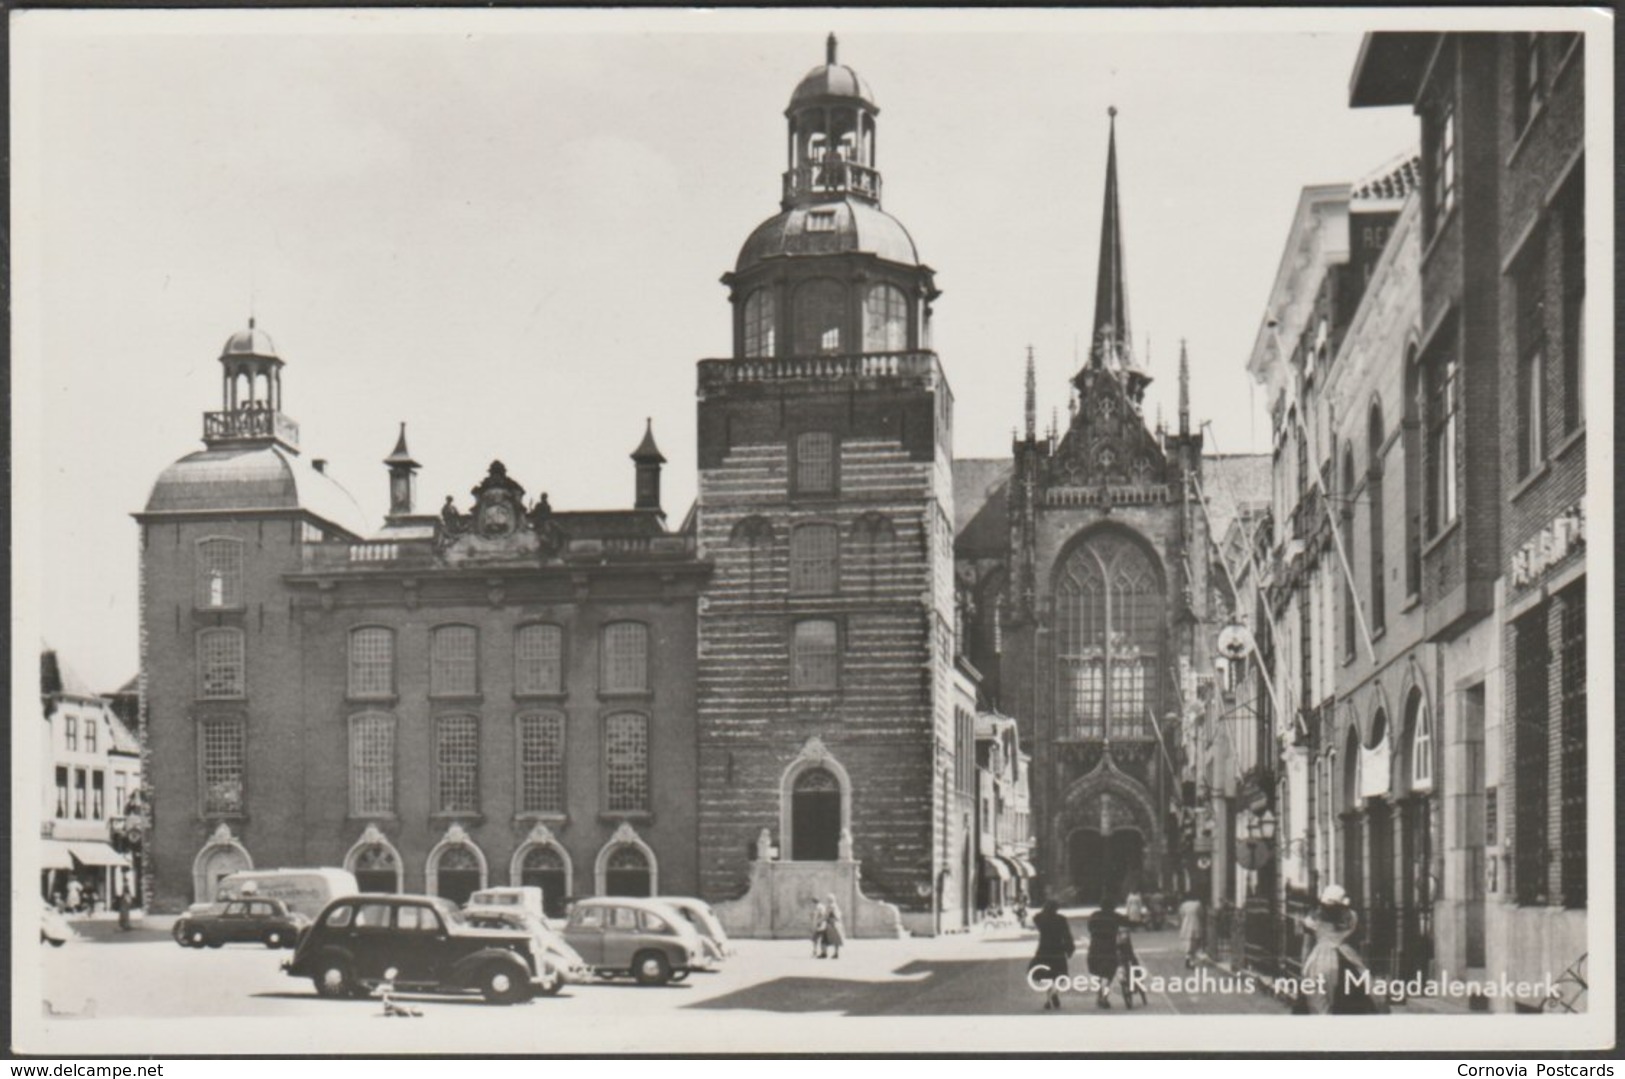 Raadhuis Met Magdalenakerk, Goes, C.1950s - Sparo Foto Briefkaart - Goes